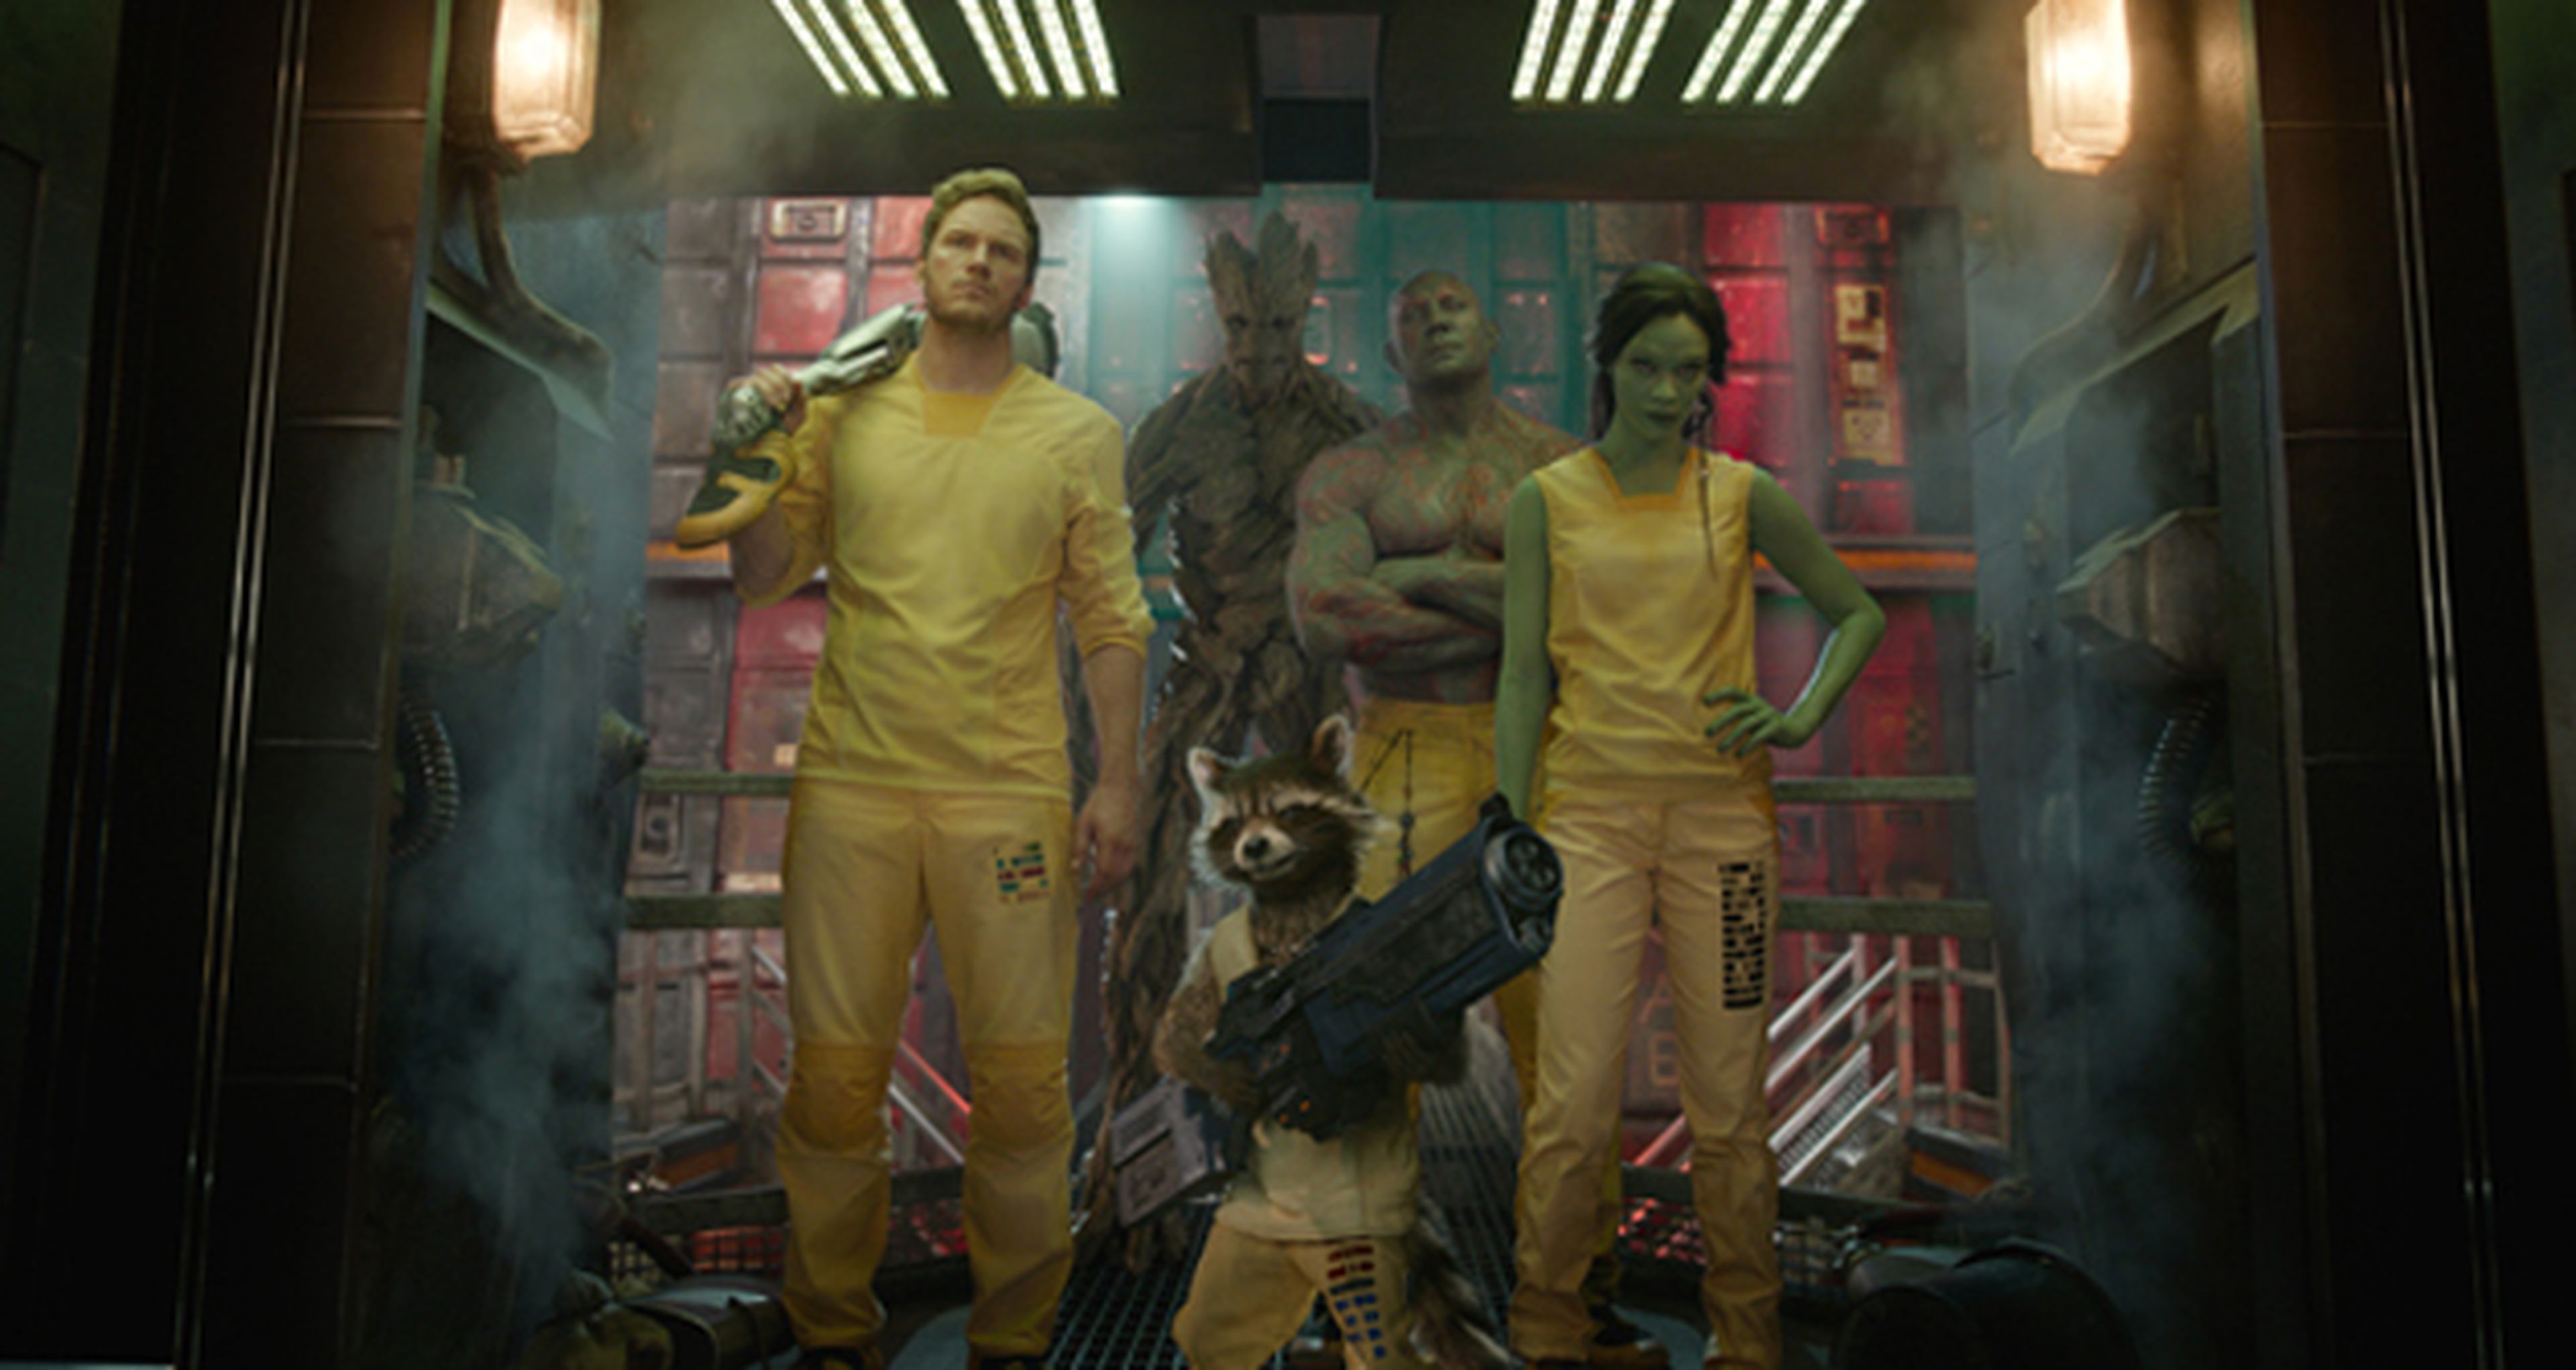 Guardianes de la Galaxia es la película más taquillera de 2014 en Estados Unidos